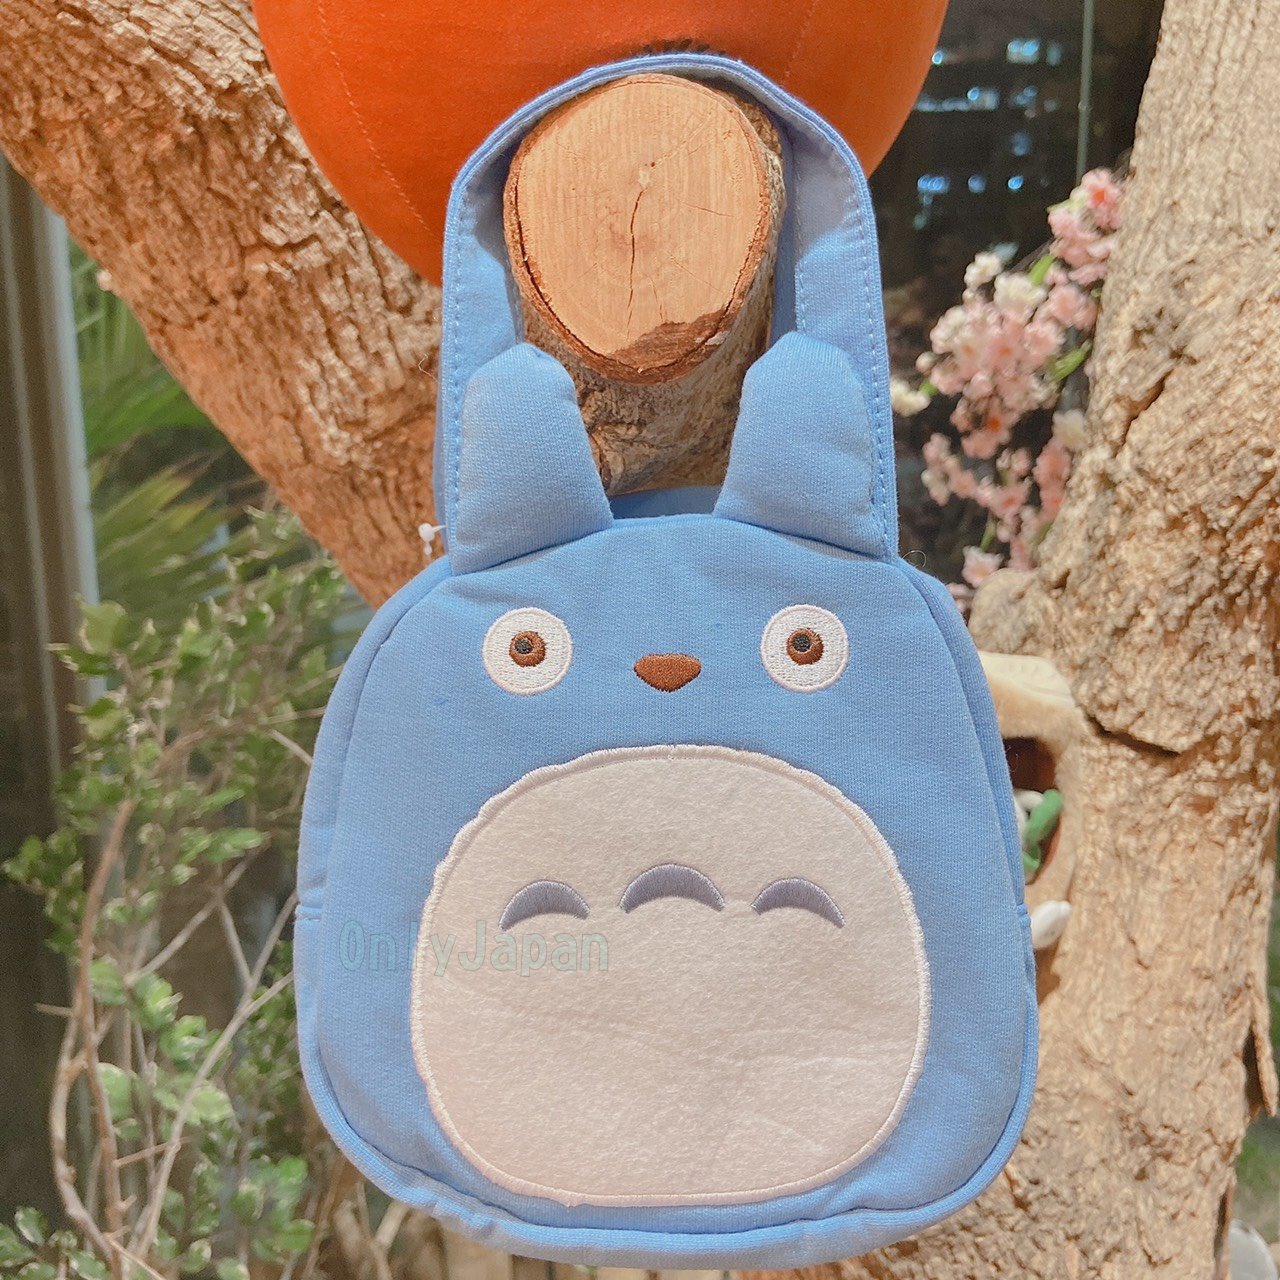 真愛日本 造型提袋 綿布提袋 電繡小提袋 中藍龍貓 龍貓totoro 宮崎駿 吉卜力 便當袋 小提袋 外出小袋 4973307374449